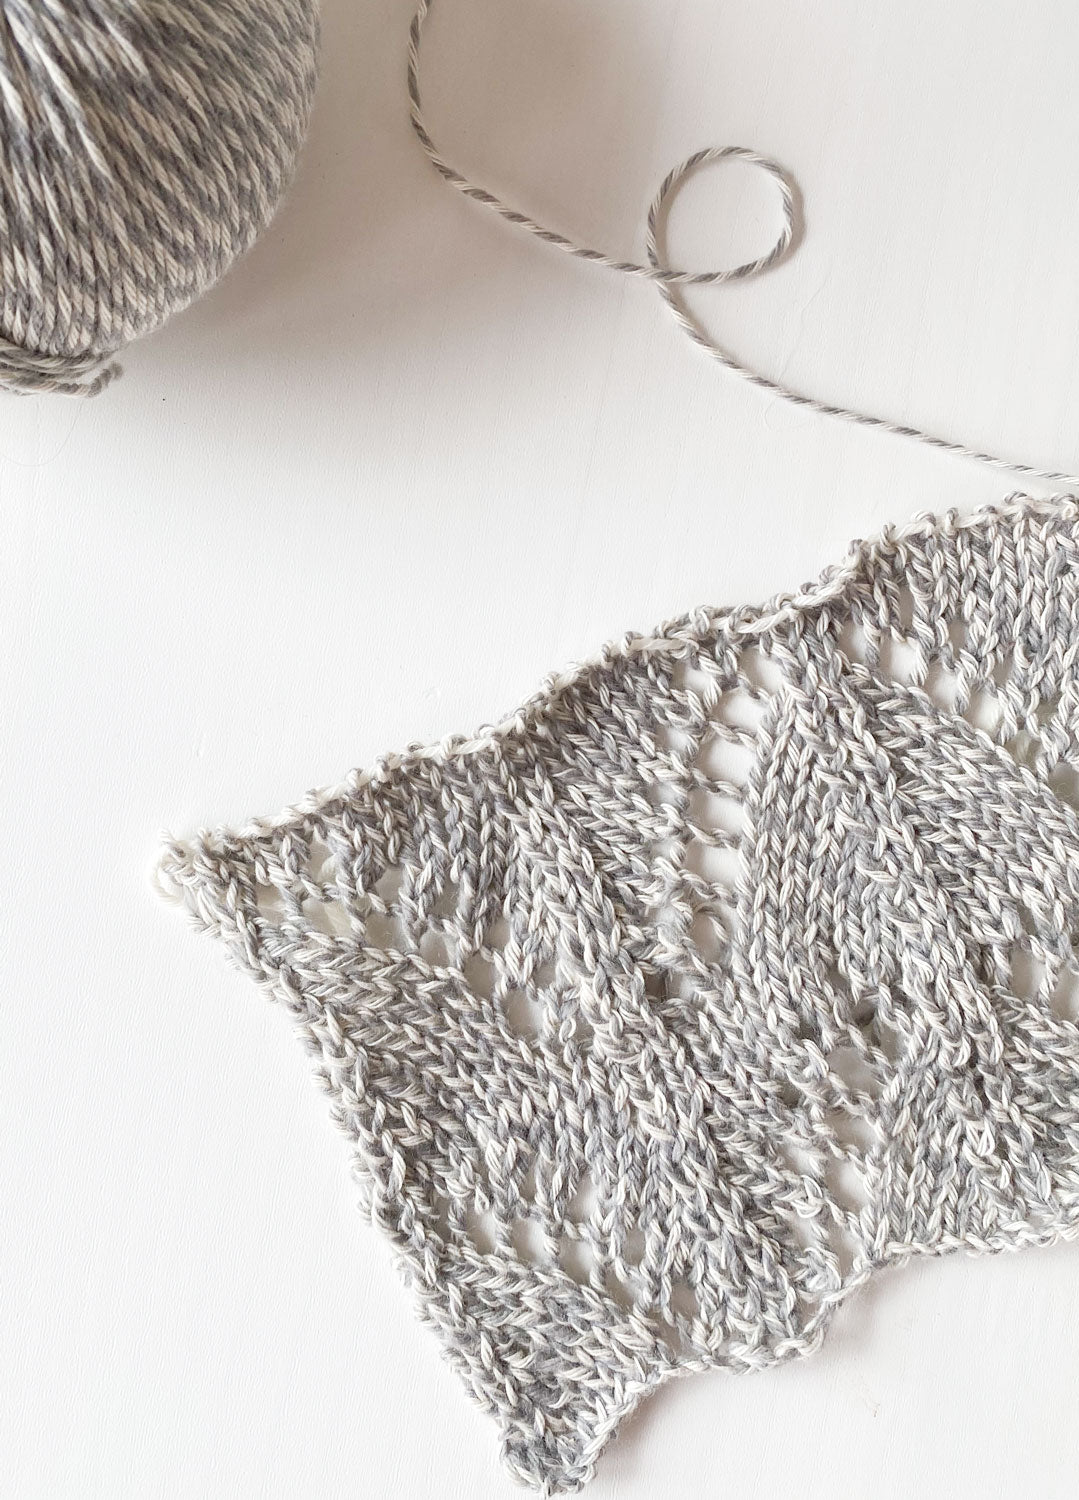 The Fuzzy Yarn Marbled Grey – weareknitters